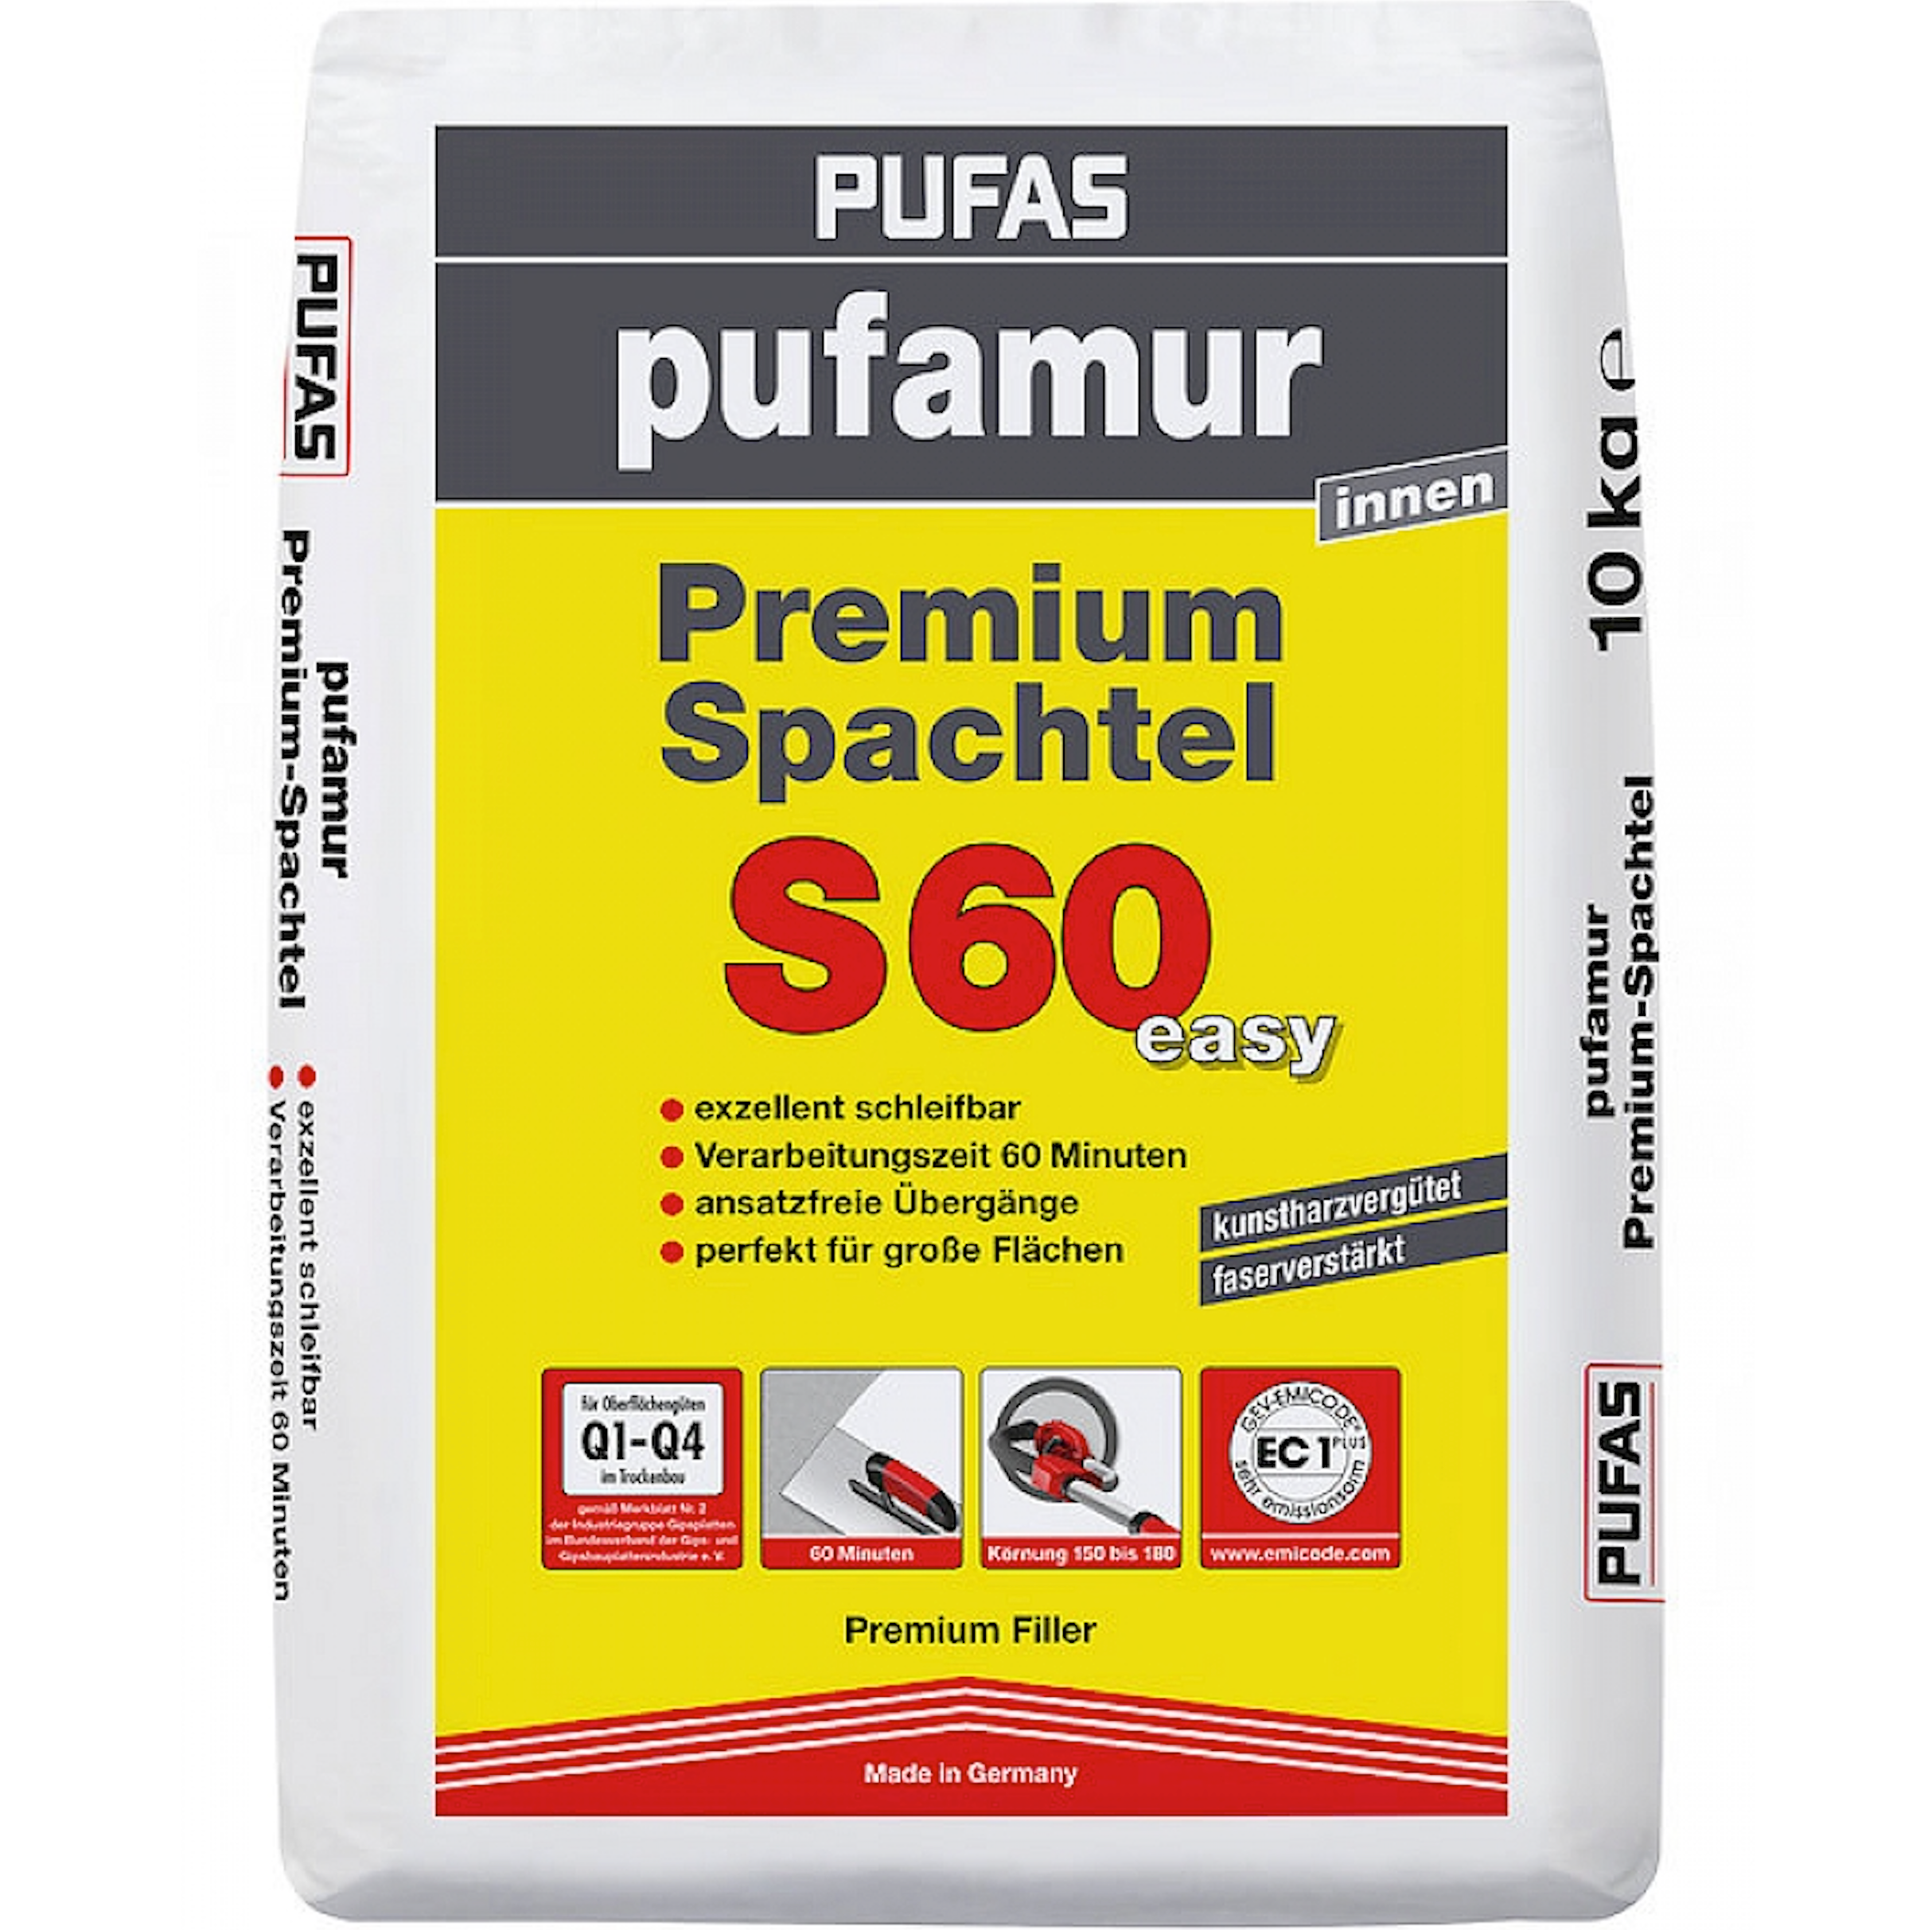 Pufas Pufamur Premium-Spachtel S60 easy